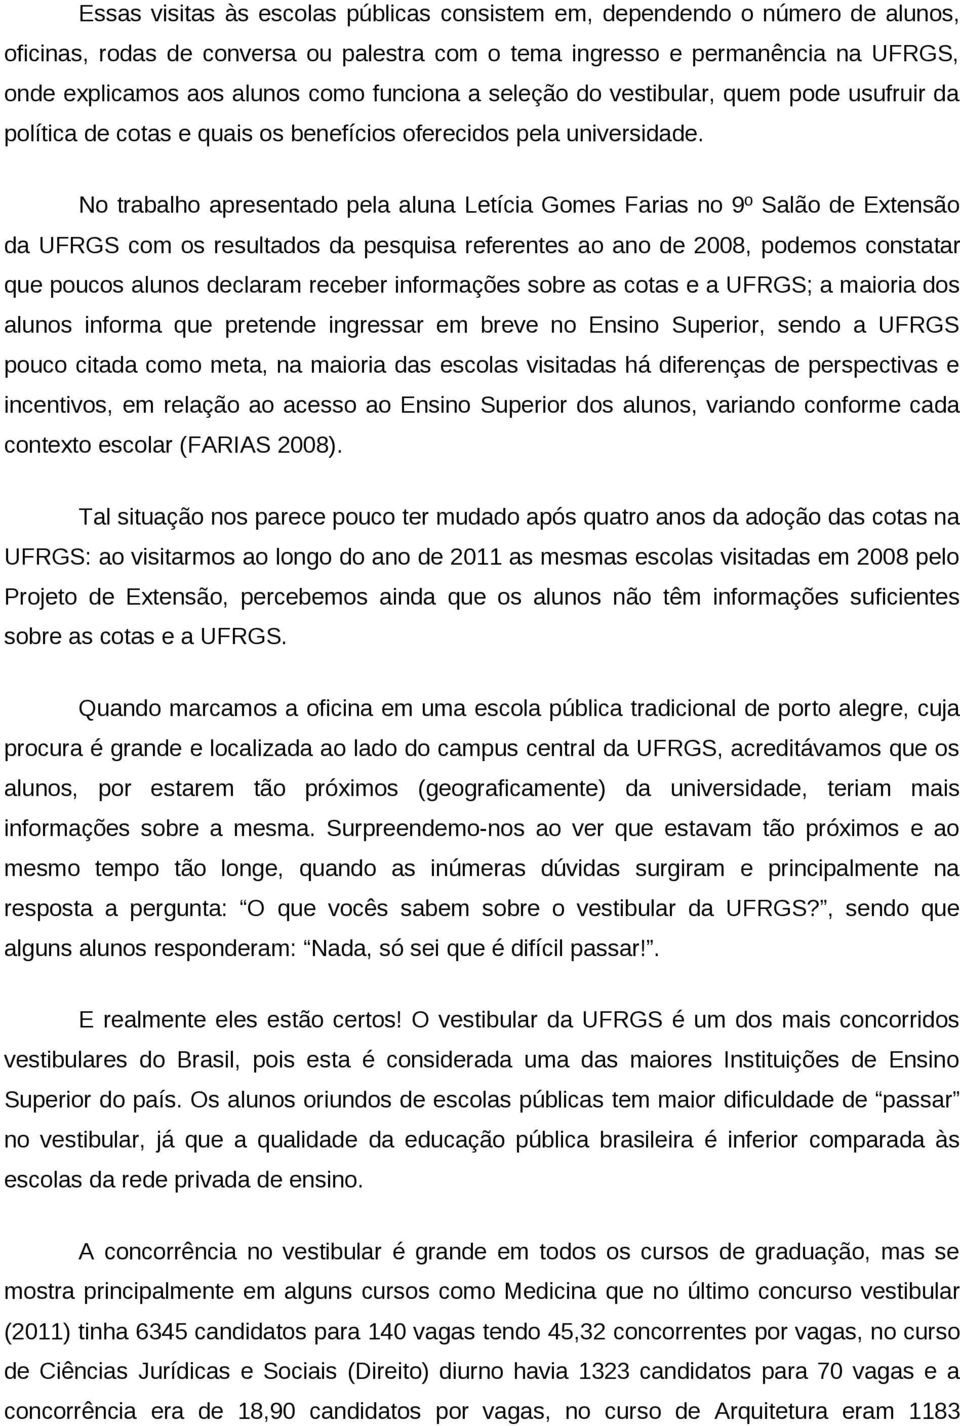 No trabalho apresentado pela aluna Letícia Gomes Farias no 9º Salão de Extensão da UFRGS com os resultados da pesquisa referentes ao ano de 2008, podemos constatar que poucos alunos declaram receber